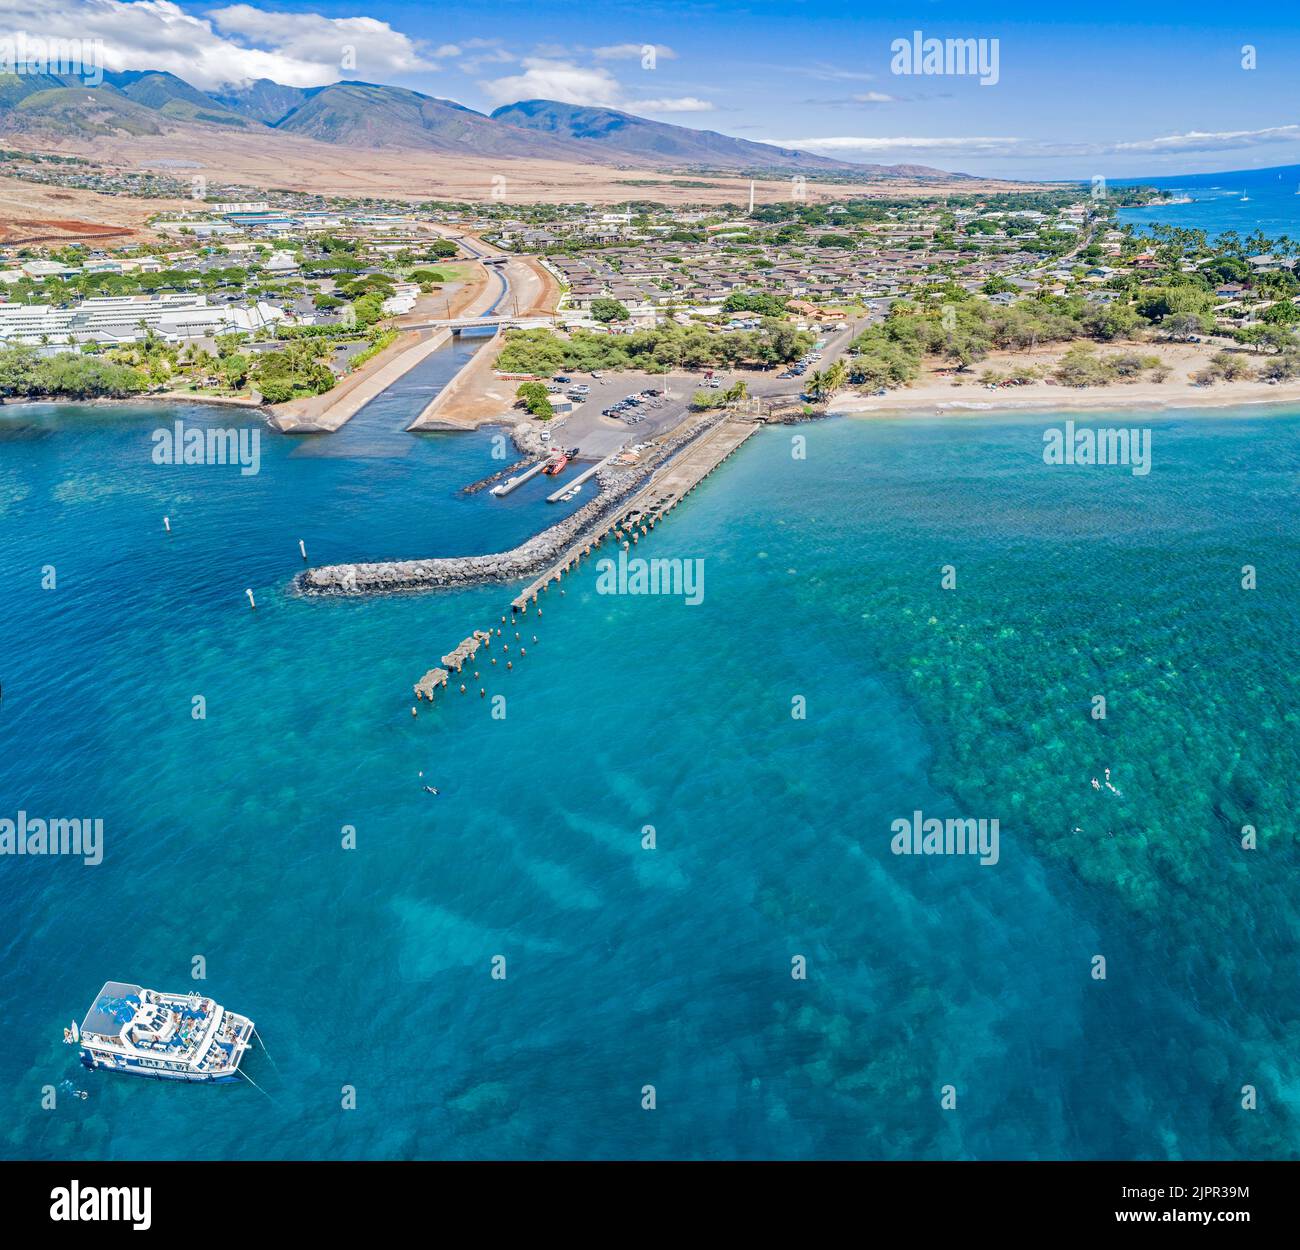 Una vista aerea del Mala Wharf nel lato nord della città di Lahaina, Maui, Hawaii, USA. Si tratta di una popolare destinazione per lo snorkeling e le immersioni. Foto Stock